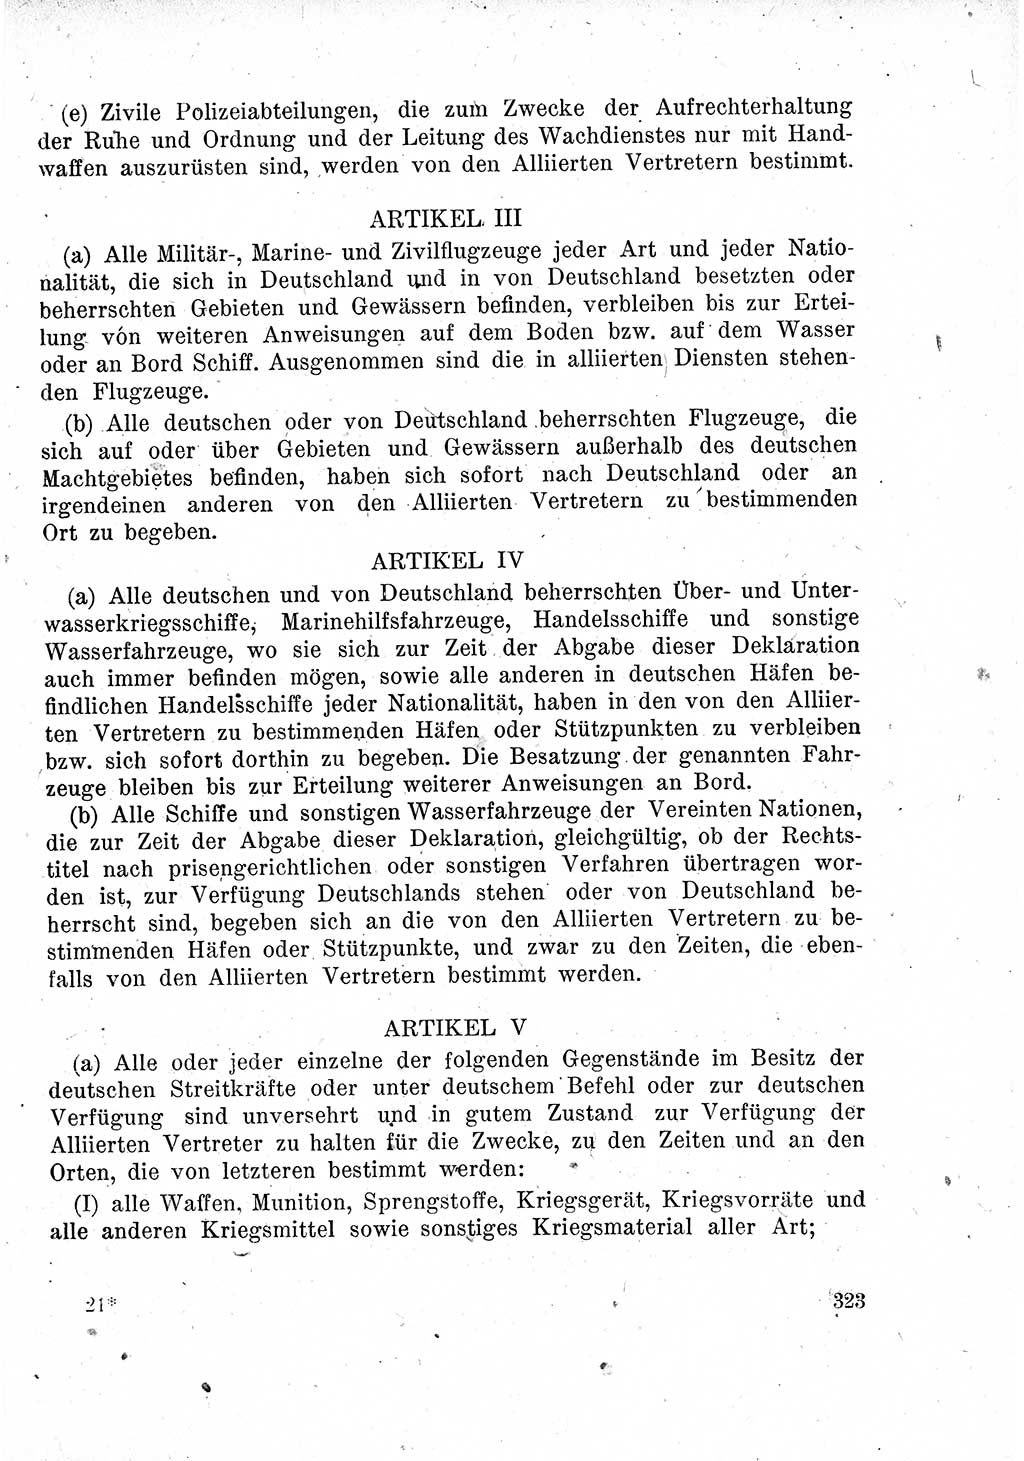 Das Recht der Besatzungsmacht (Deutschland), Proklamationen, Deklerationen, Verordnungen, Gesetze und Bekanntmachungen 1947, Seite 323 (R. Bes. Dtl. 1947, S. 323)